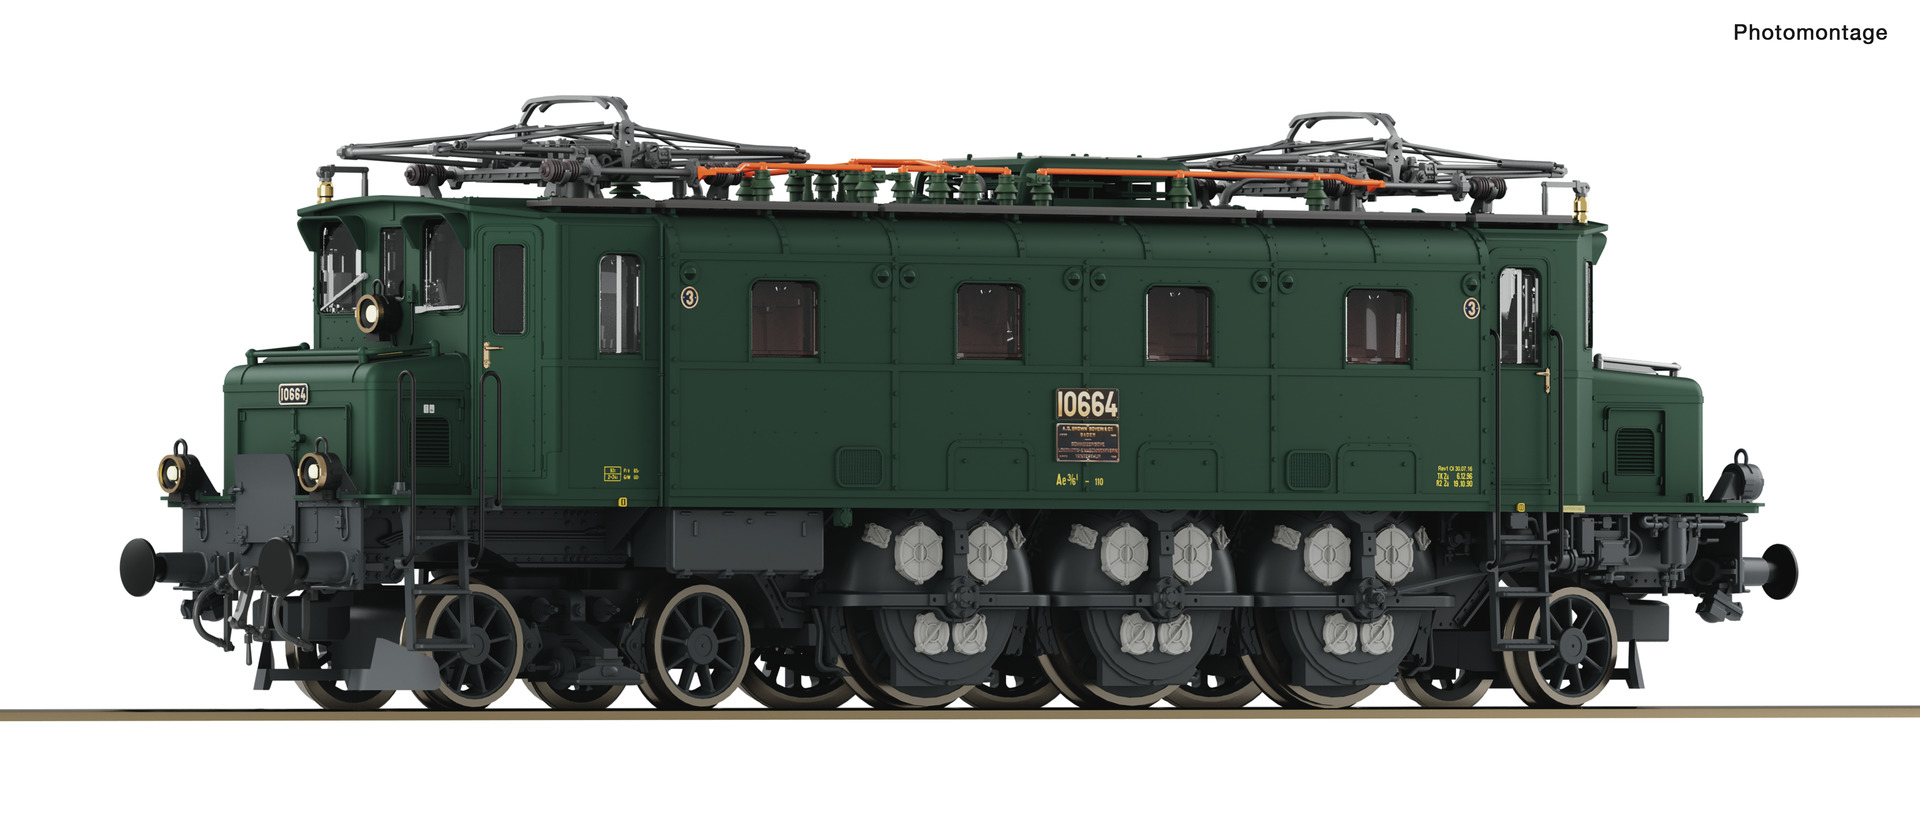 Roco 70091 H0 Elektrische locomotief Ae 3/6 10664 SBB